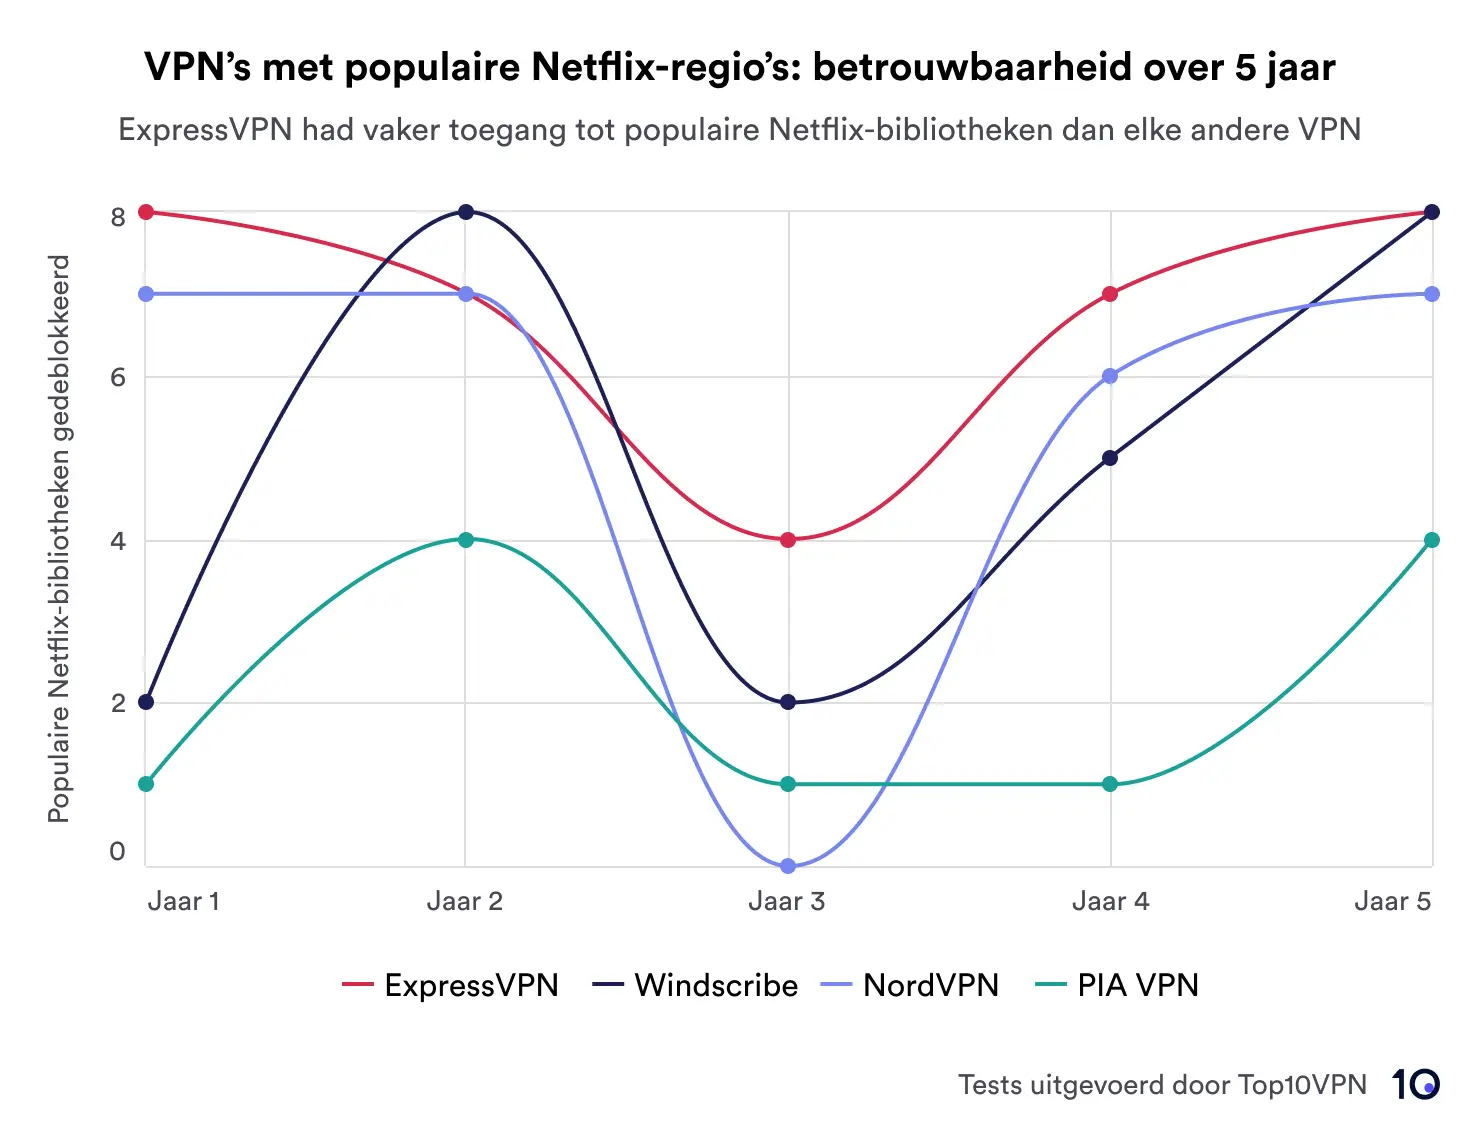 Een lijngrafiek die de prestaties van vier VPN's (ExpressVPN, Windscribe, NordVPN en PIA VPN) laat zien bij het deblokkeren van Netflix-regio's over een periode van vijf jaar. ExpressVPN is toonaangevend in betrouwbaarheid.